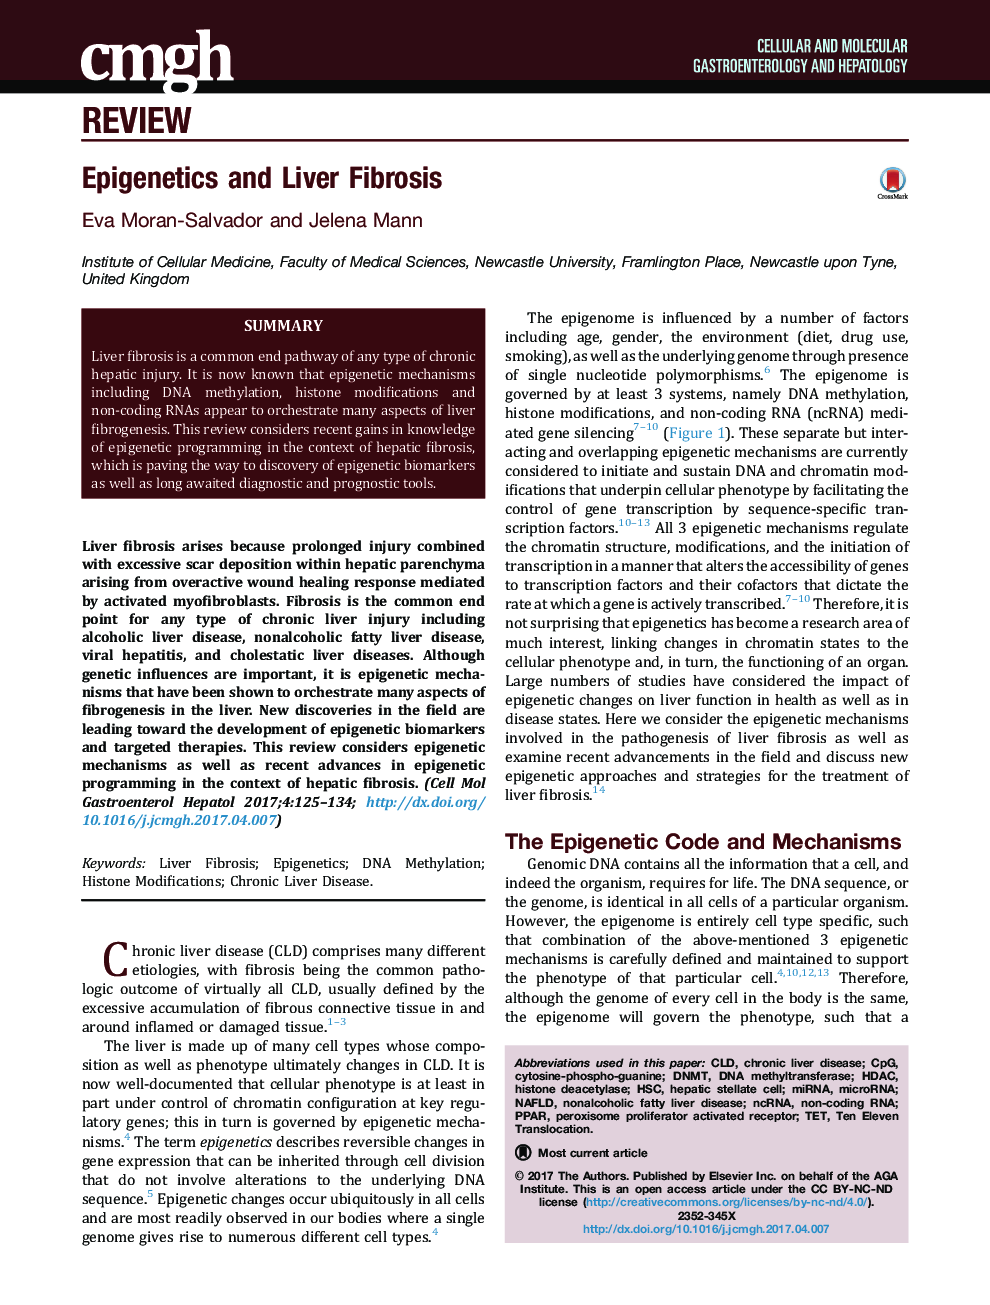 Epigenetics and Liver Fibrosis